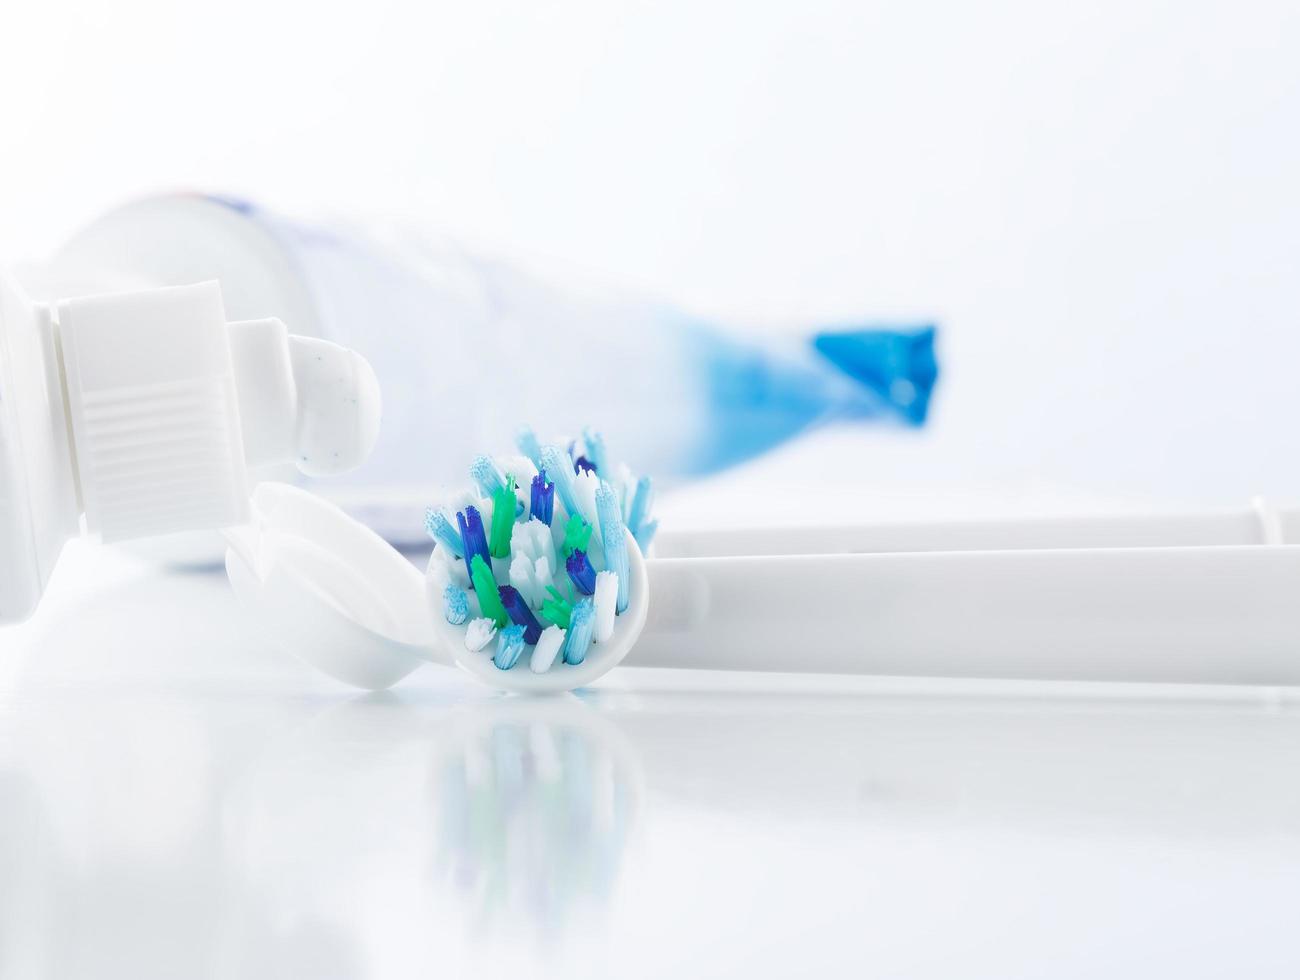 higiene oral, escova de dente, pasta de dente, atendimento odontológico profissional foto